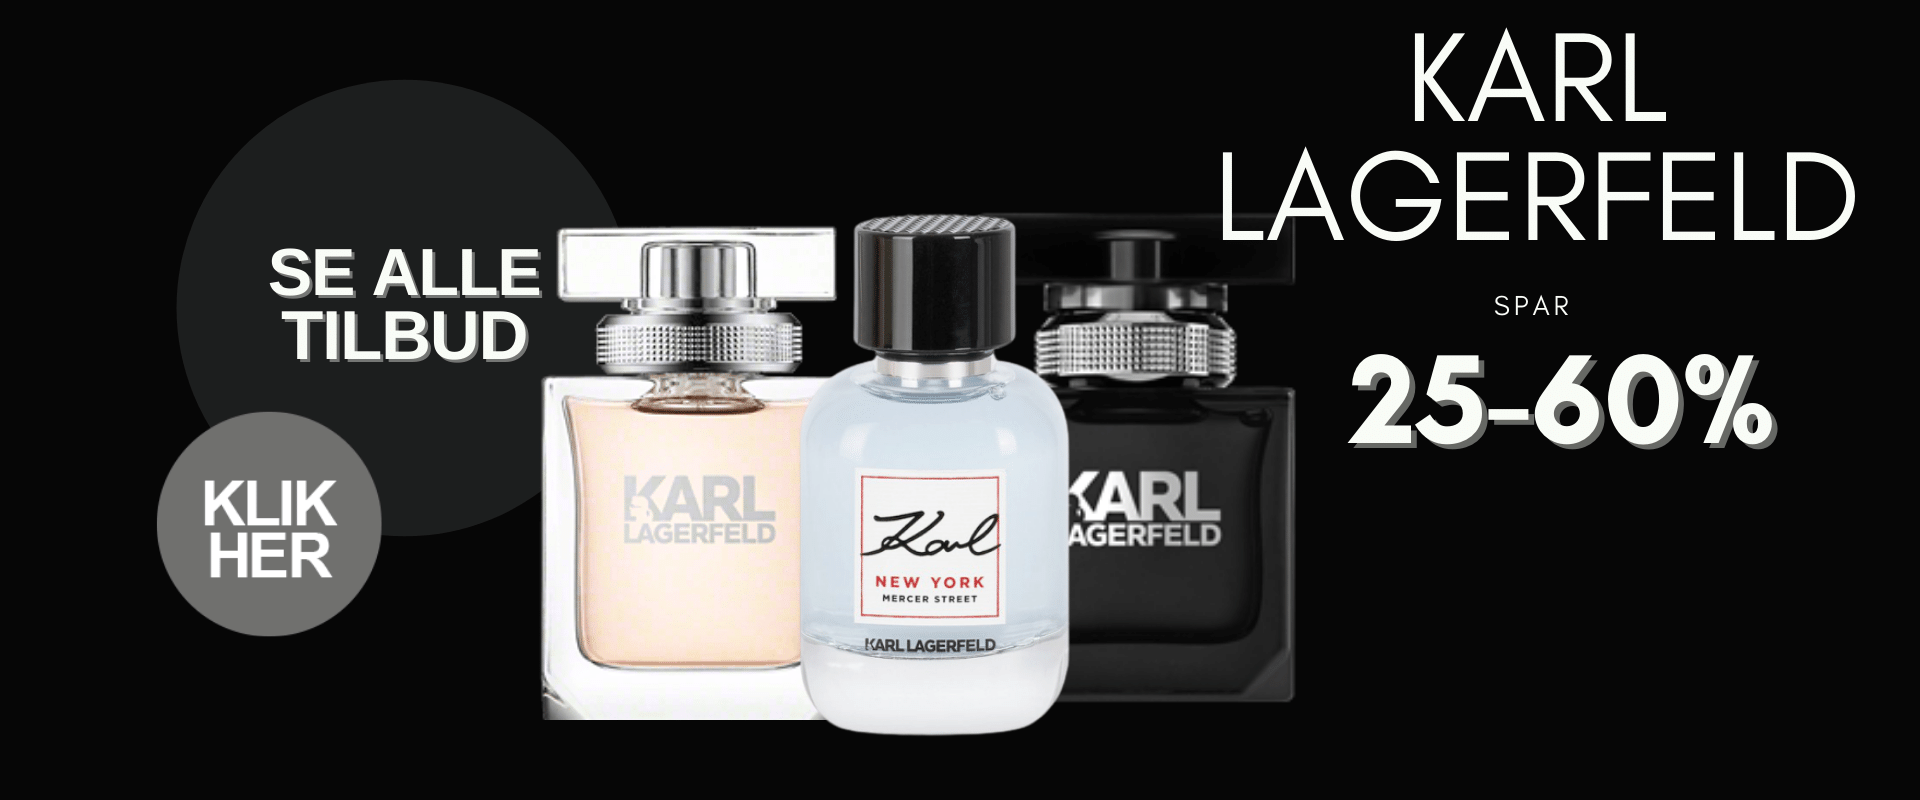 Black Week tilbud Karl Lagerfeld Parfume Klik Her